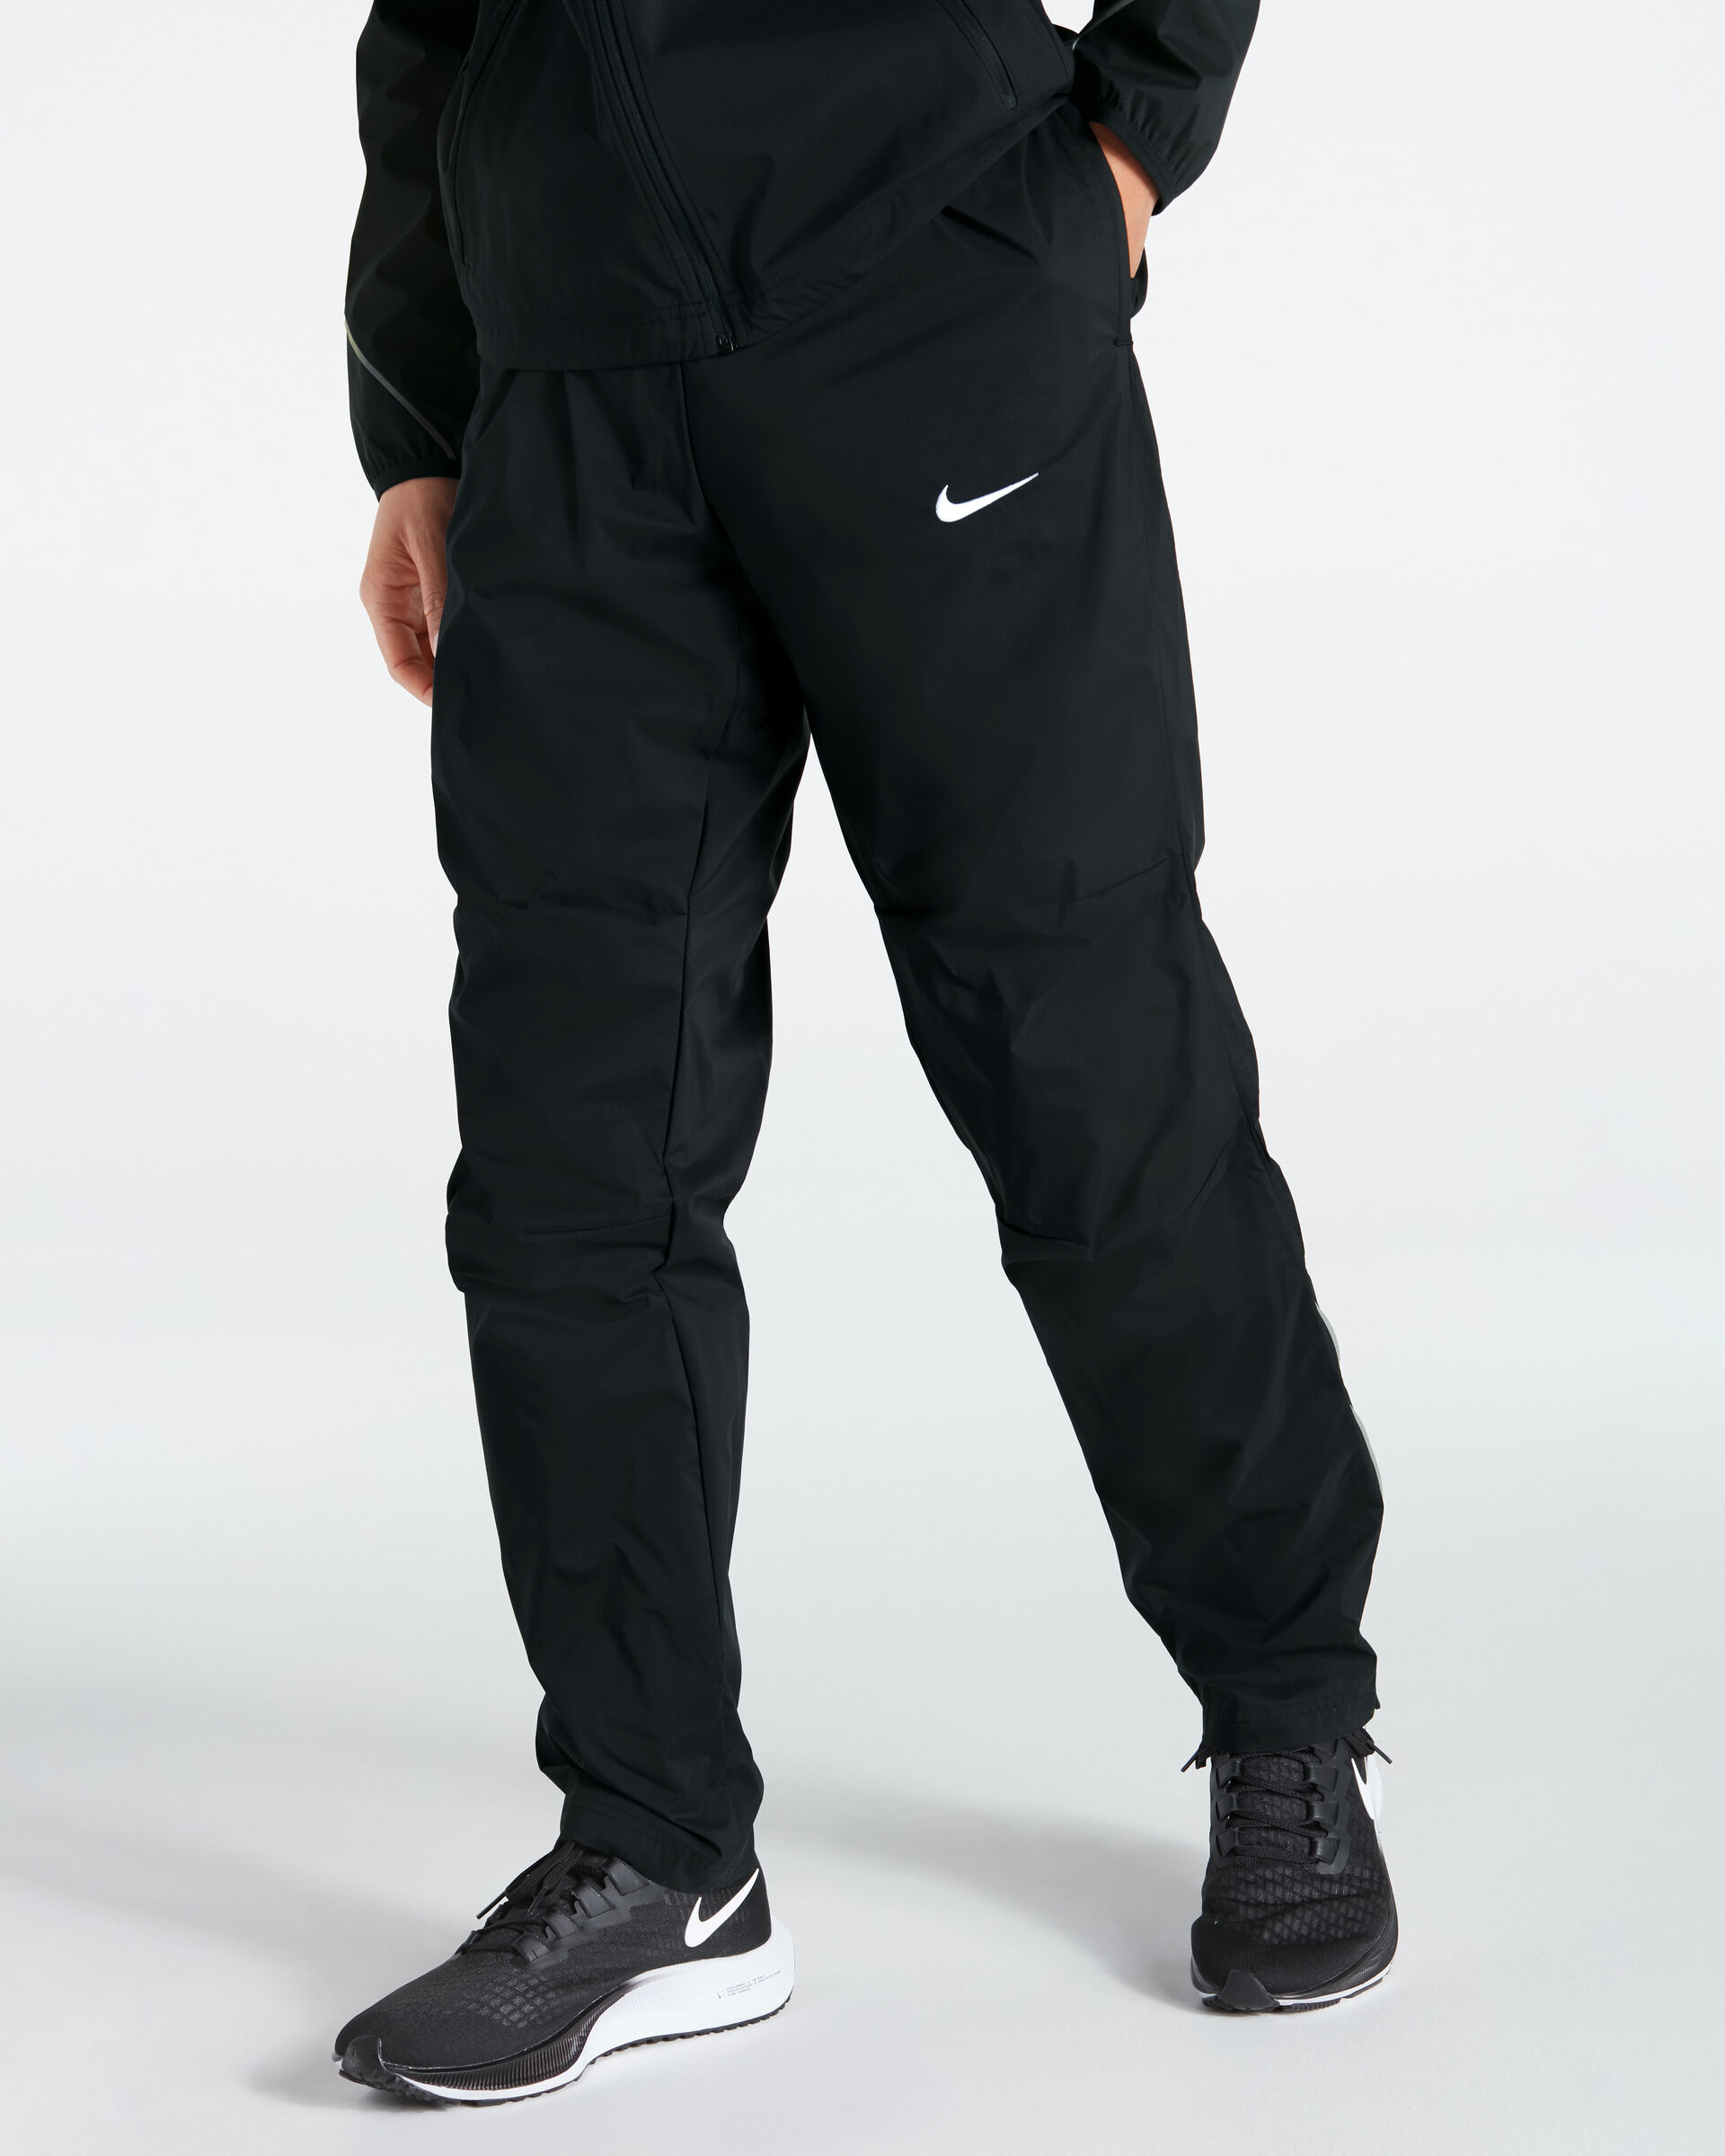 Nike Pantaloni da tuta Woven Nero per Uomo NT0321-010 M